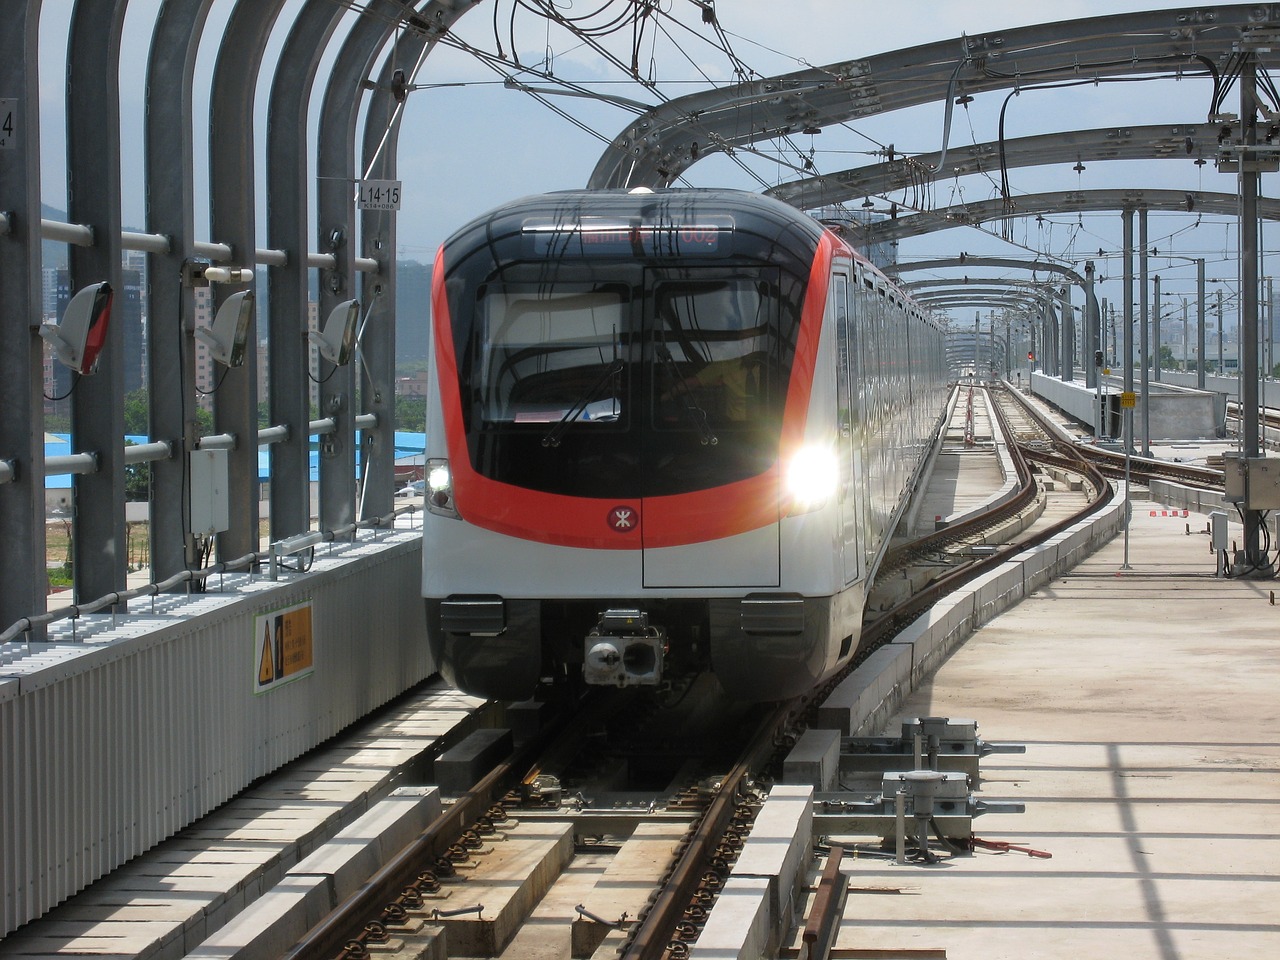 Shenzhen, Metro, Geležinkelis, Geležinkelis, Kelionė, Miesto, Verslas, Metro, Šiuolaikiška, Greitai